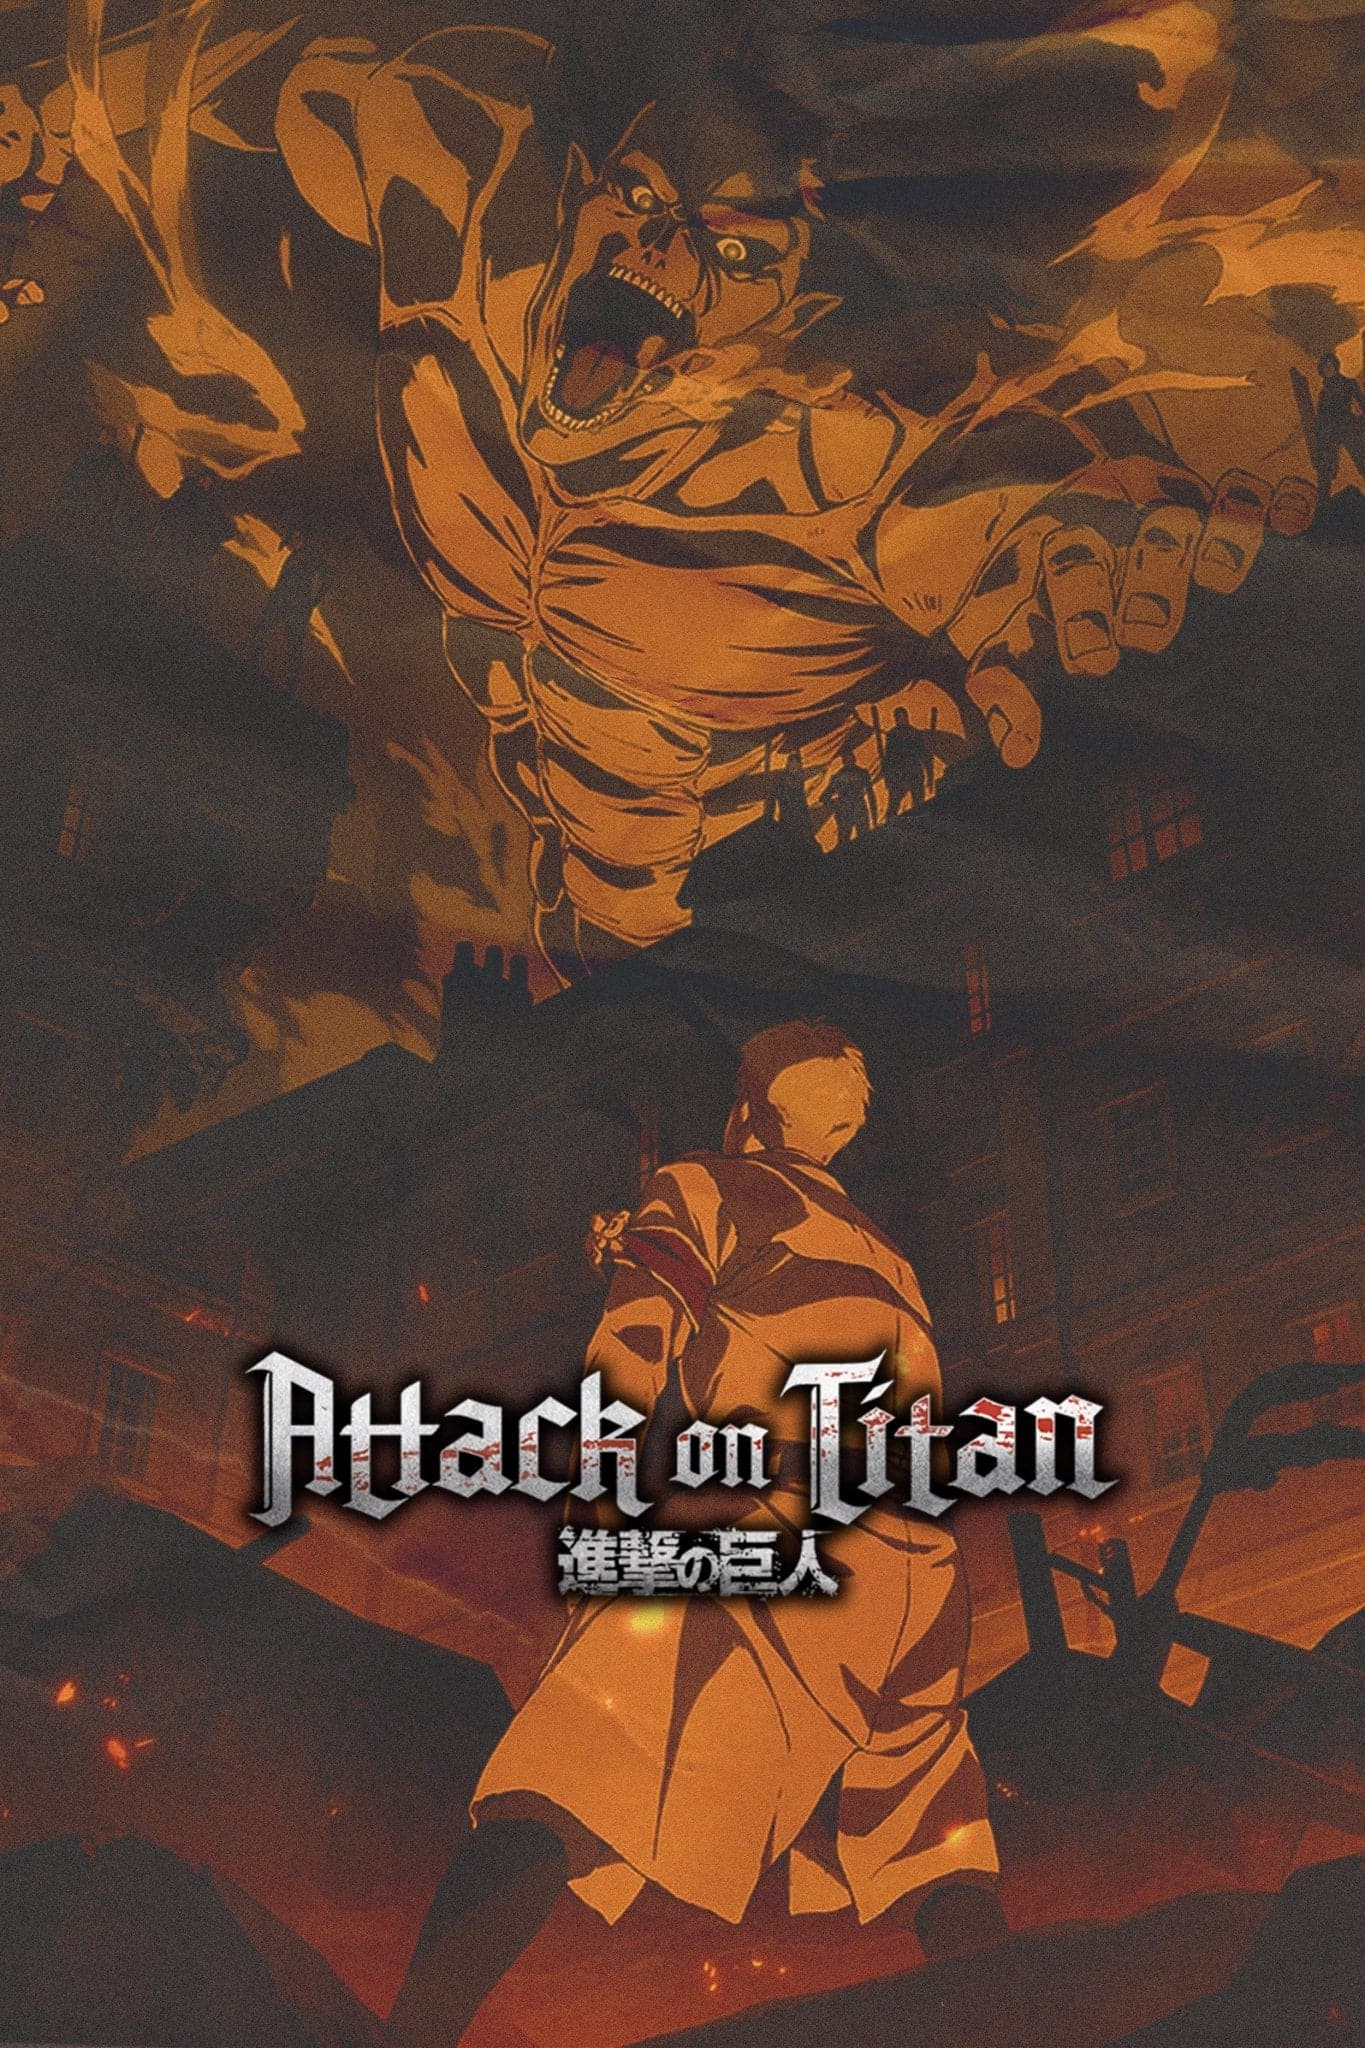 Attack on Titan - Attack Poster Print (24 x 36) 